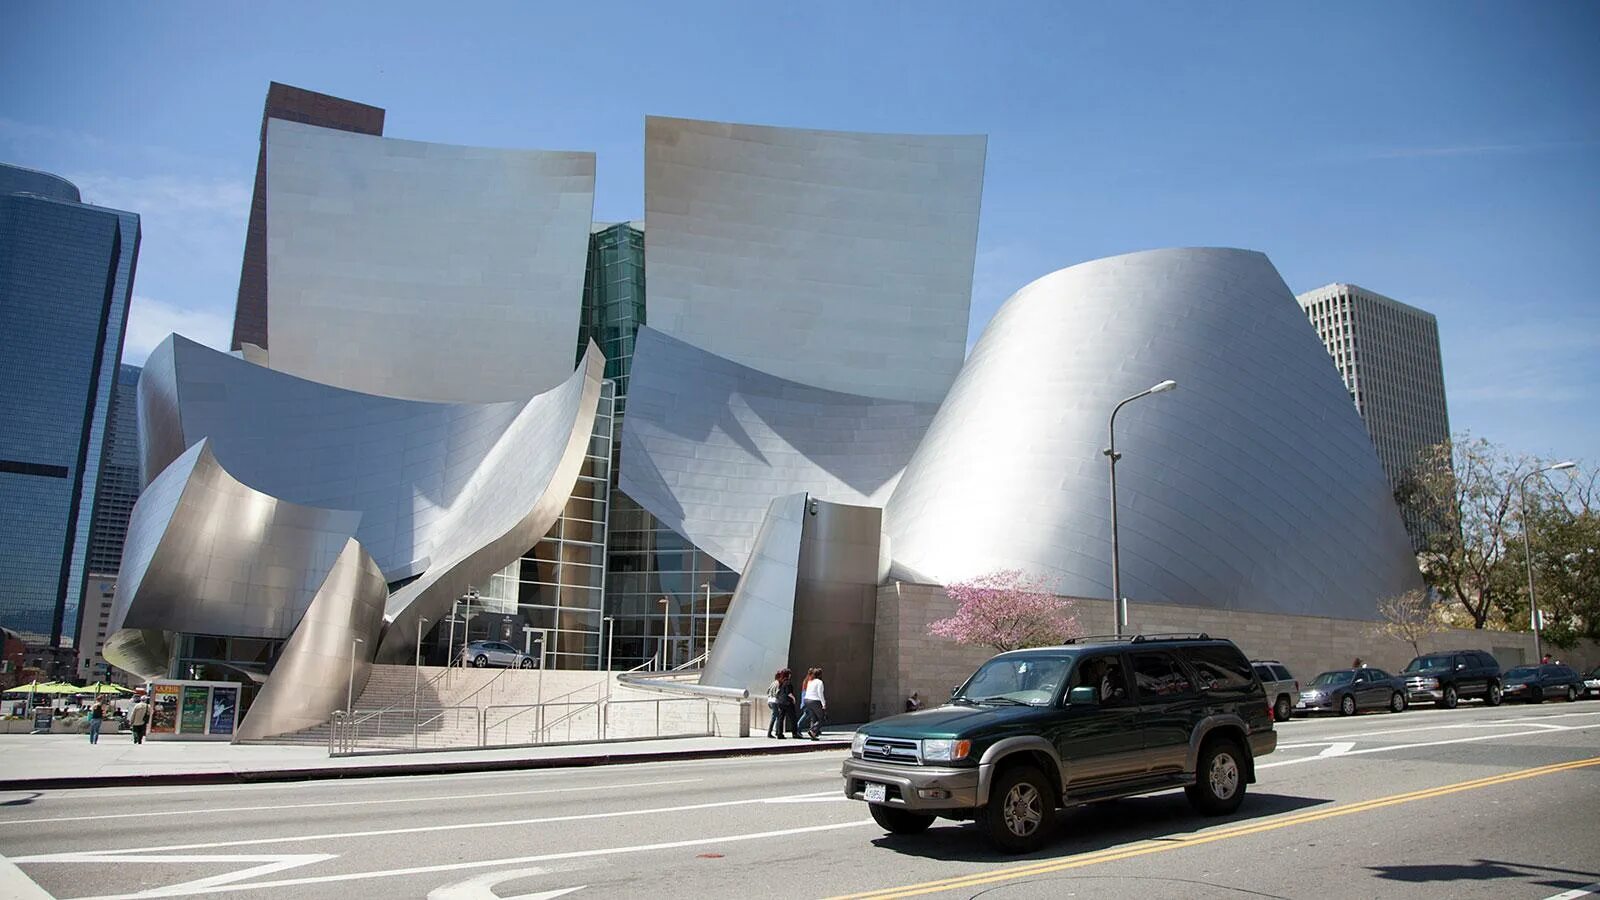 Концертный зал диснея. Фрэнк Гери музей Уолта Диснея. Фрэнк Гери концертный зал. Концертный зал Уолта Диснея в Лос-Анджелесе, США. Здание концертного зала имени Уолта Диснея в Лос-Анджелесе.